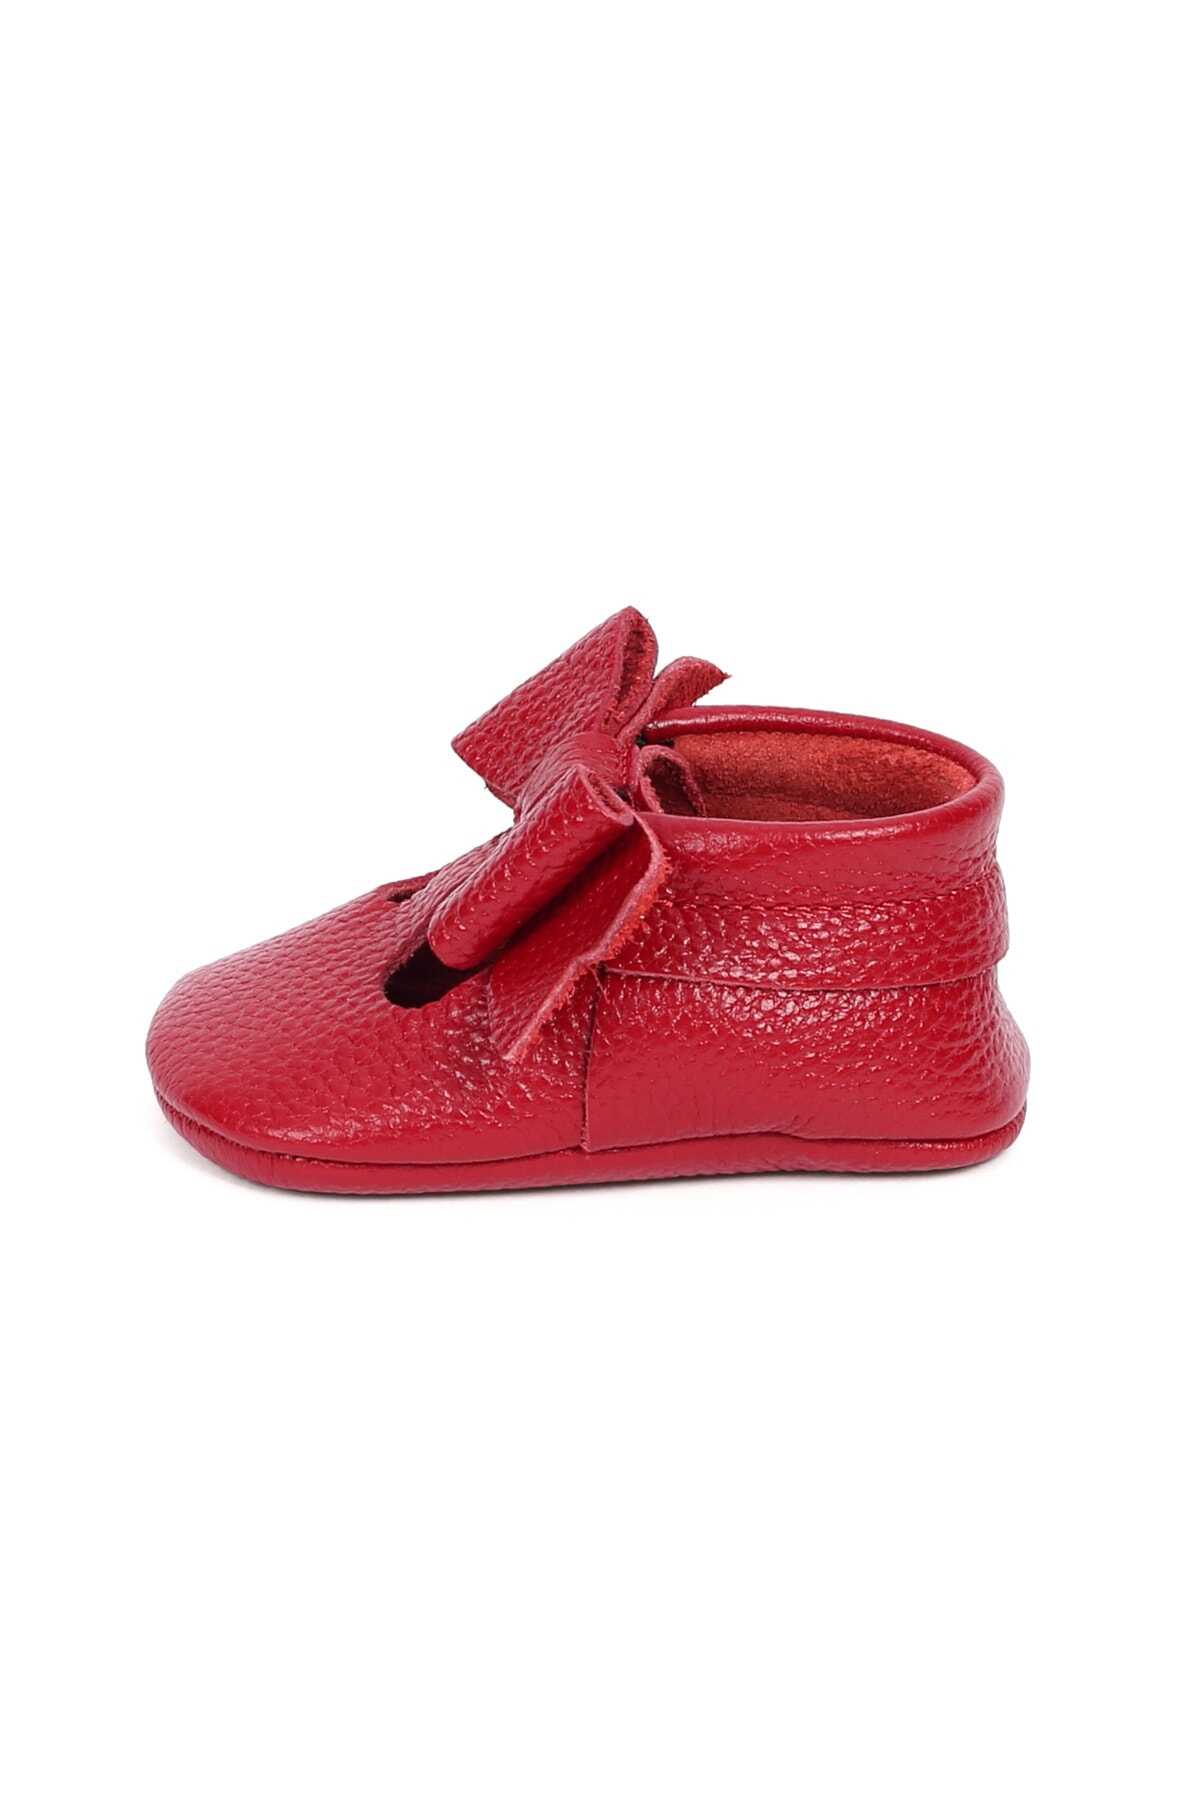 کفش رو فرشی پاپیون دار بچه گانه دخترانه قرمز برند YoYo Junior